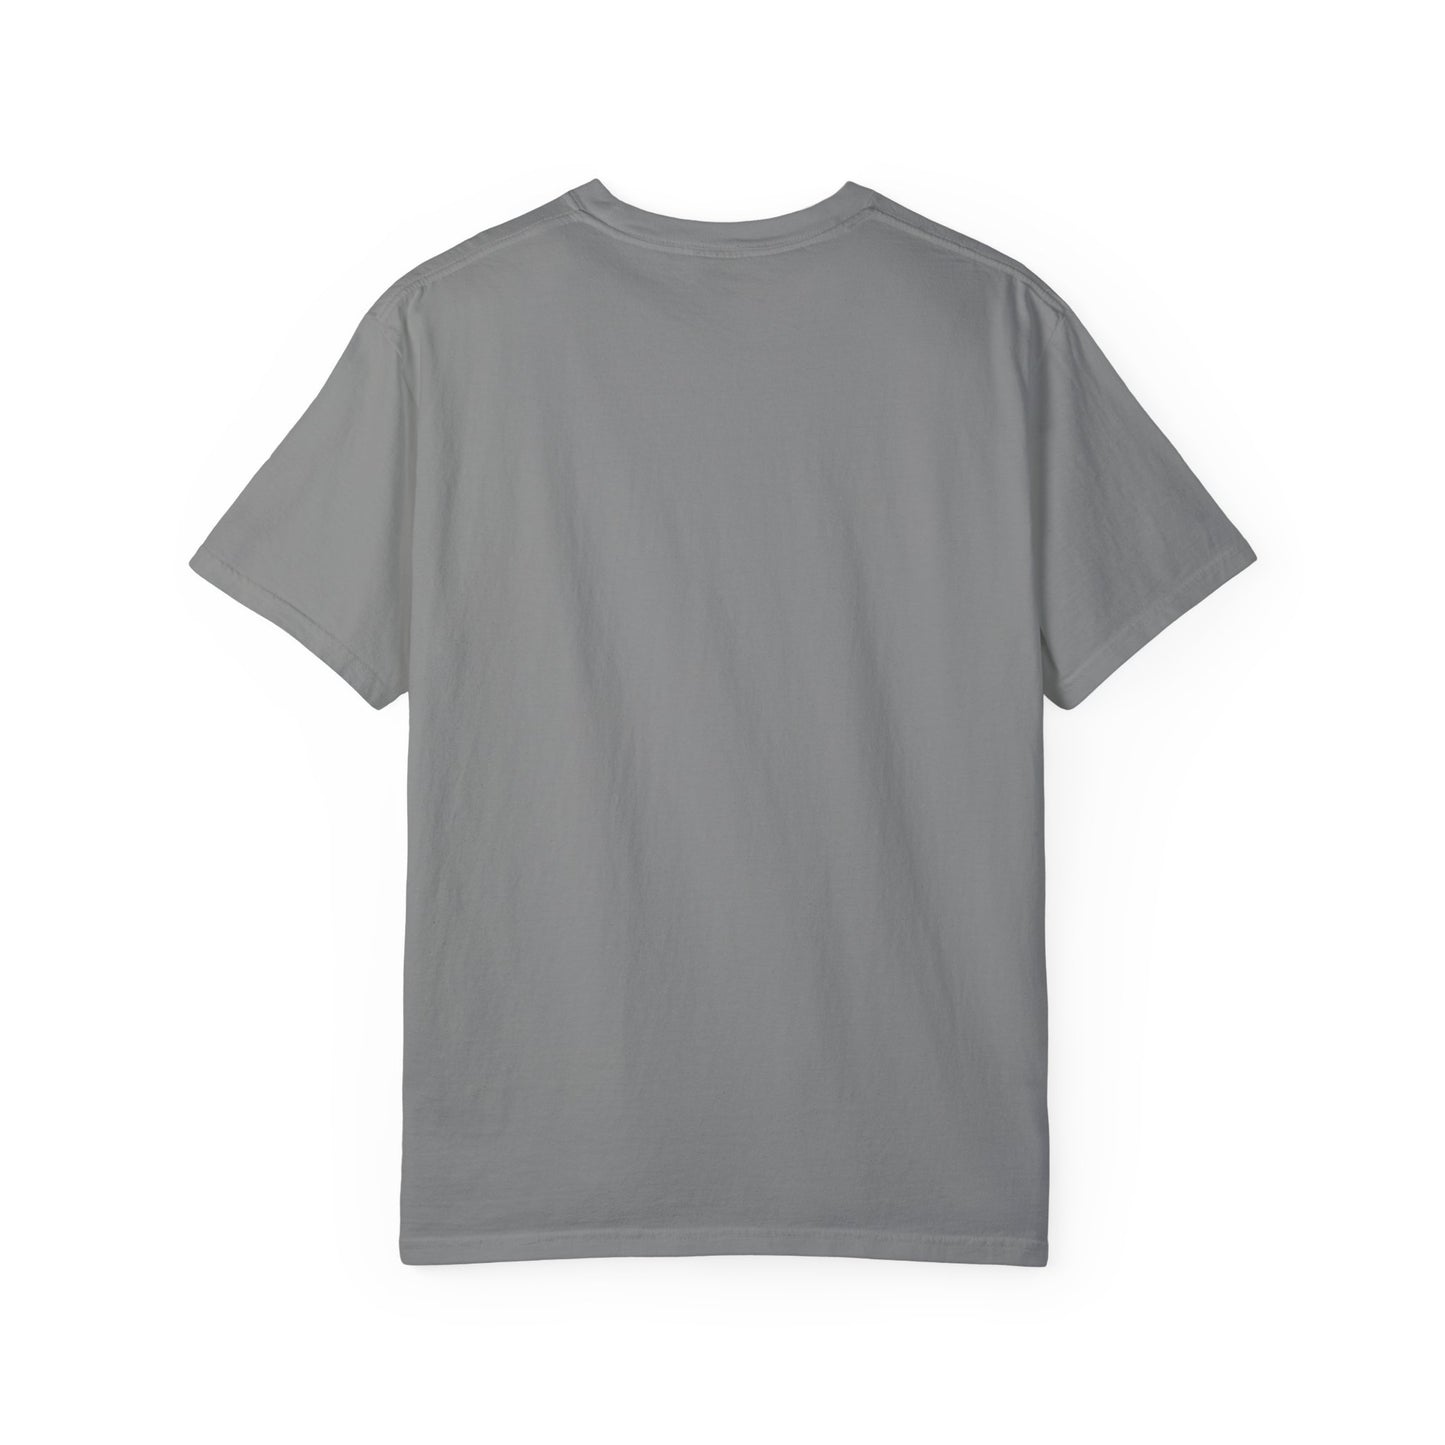 Block Letters Nerd T-shirt - Unisex Fit